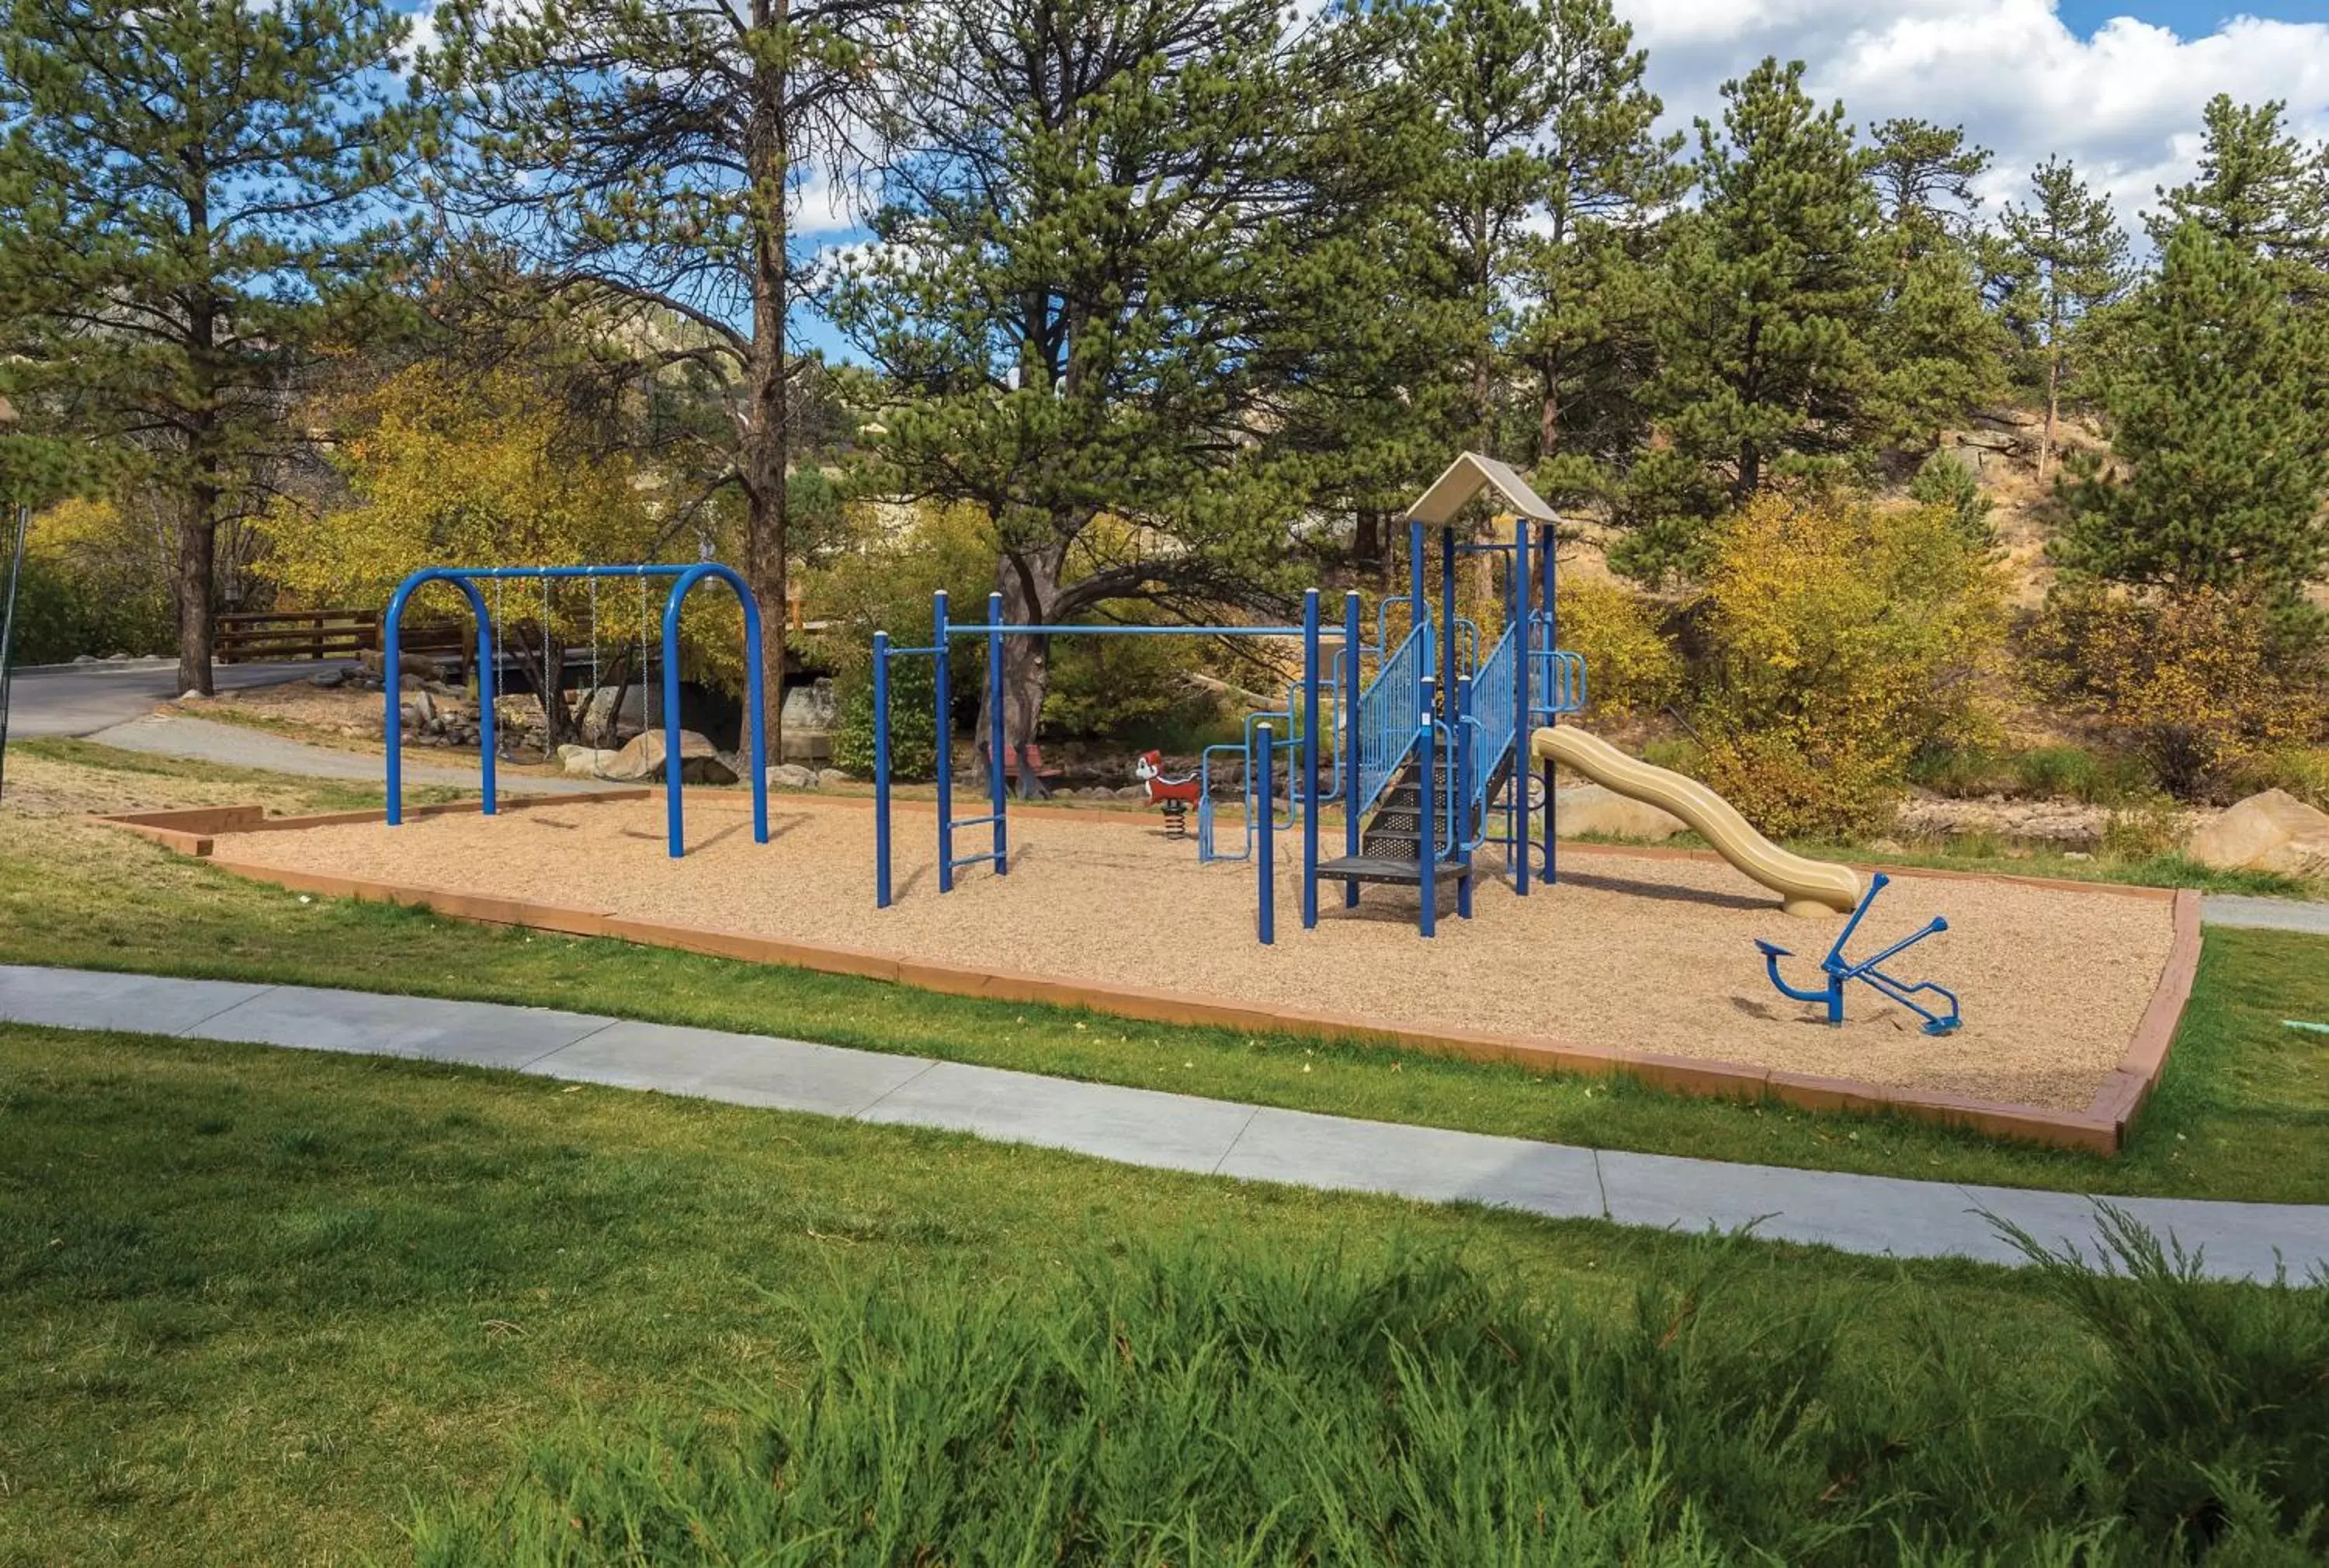 Children play ground, Children's Play Area in WorldMark Estes Park